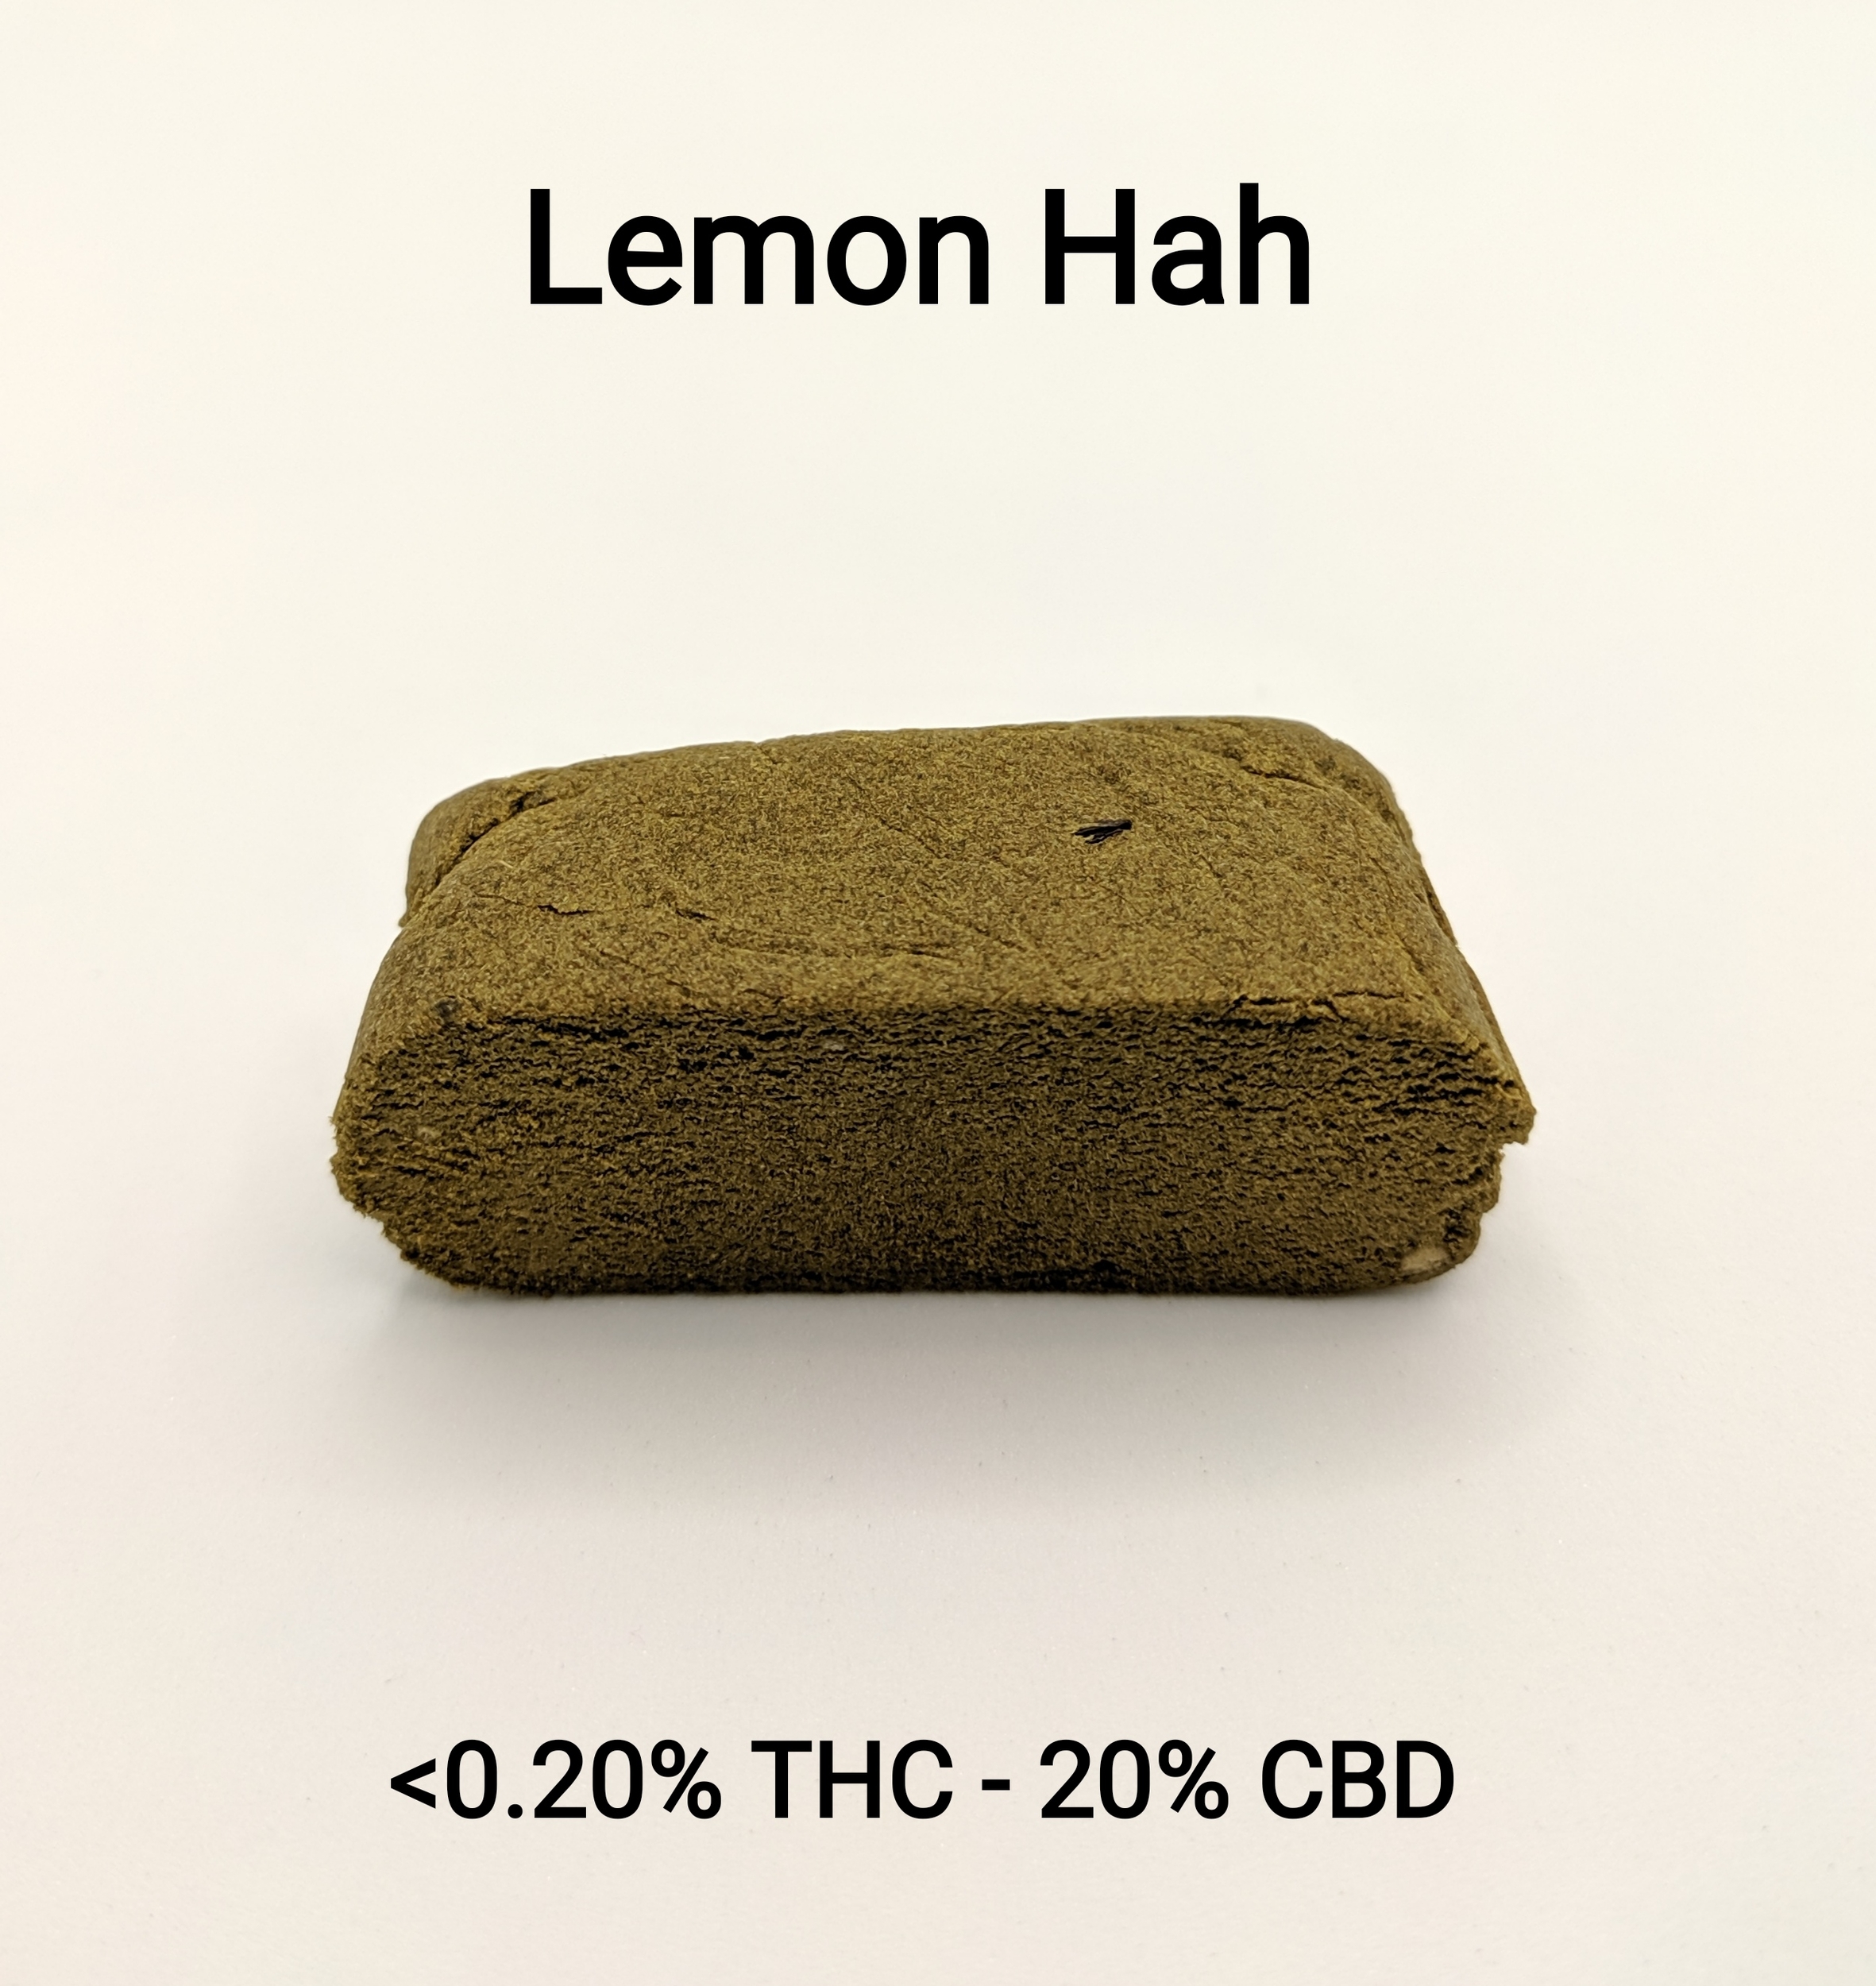 Lemon Hash